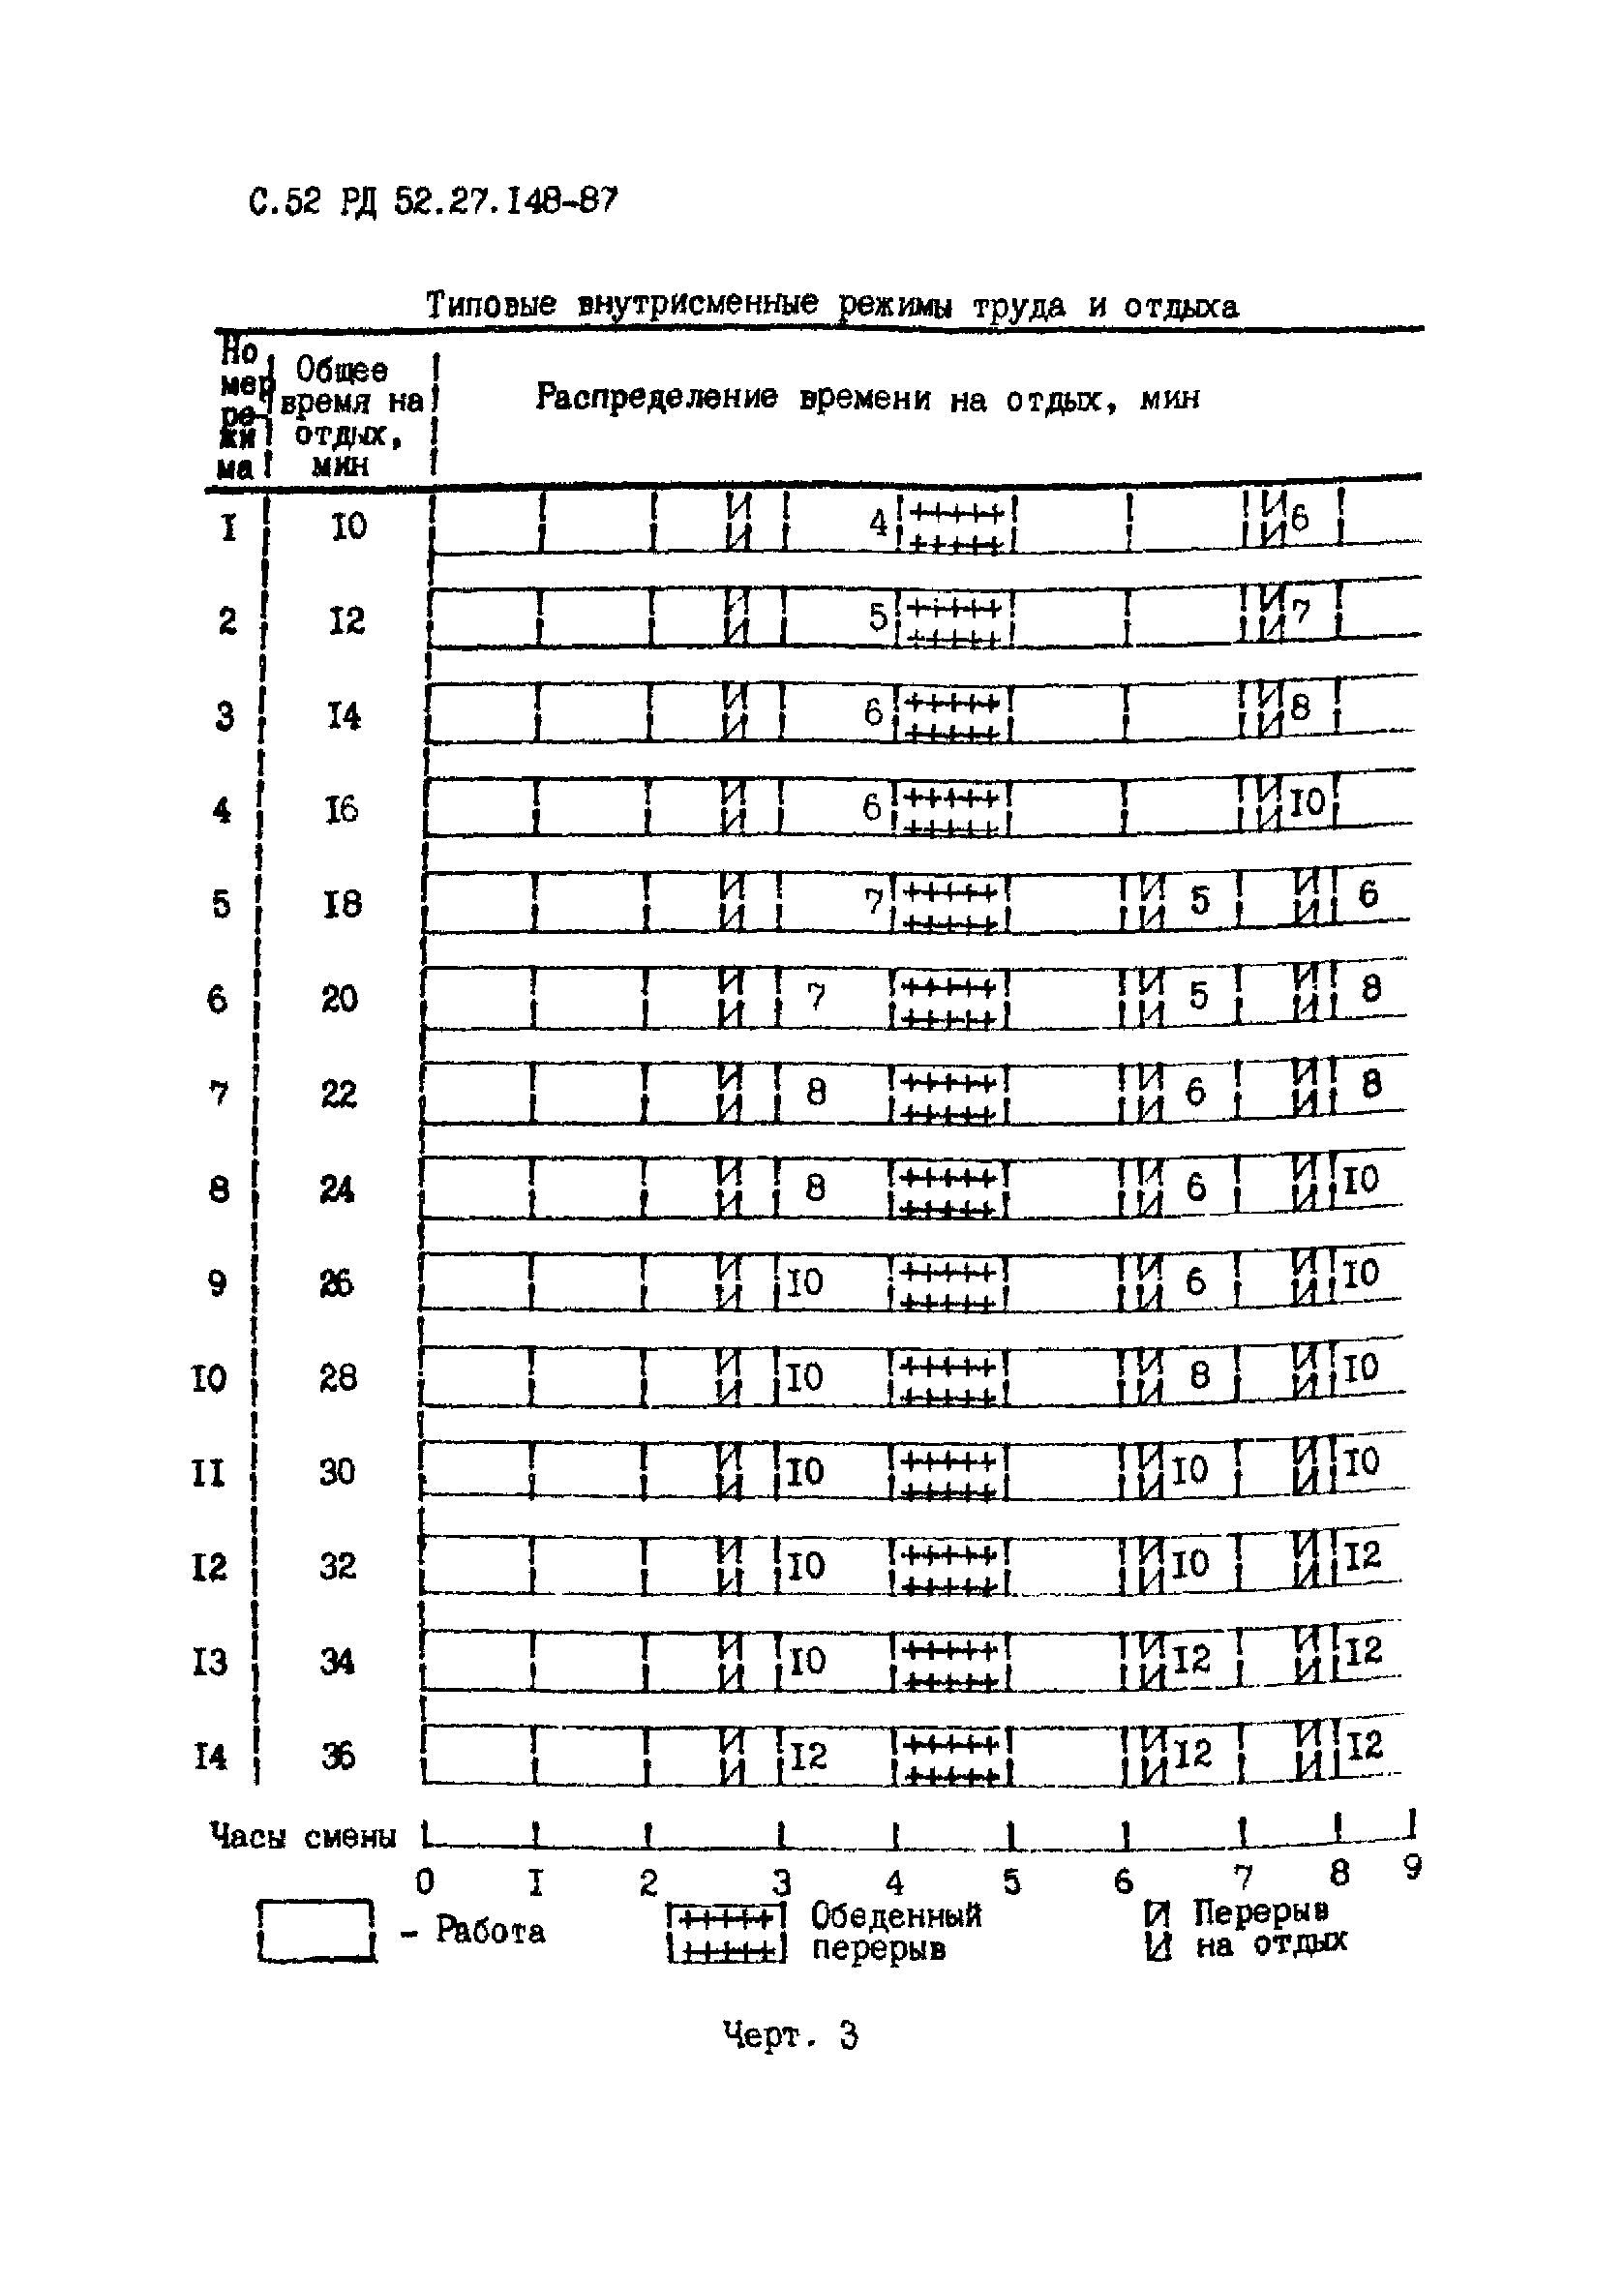 РД 52.27.148-87